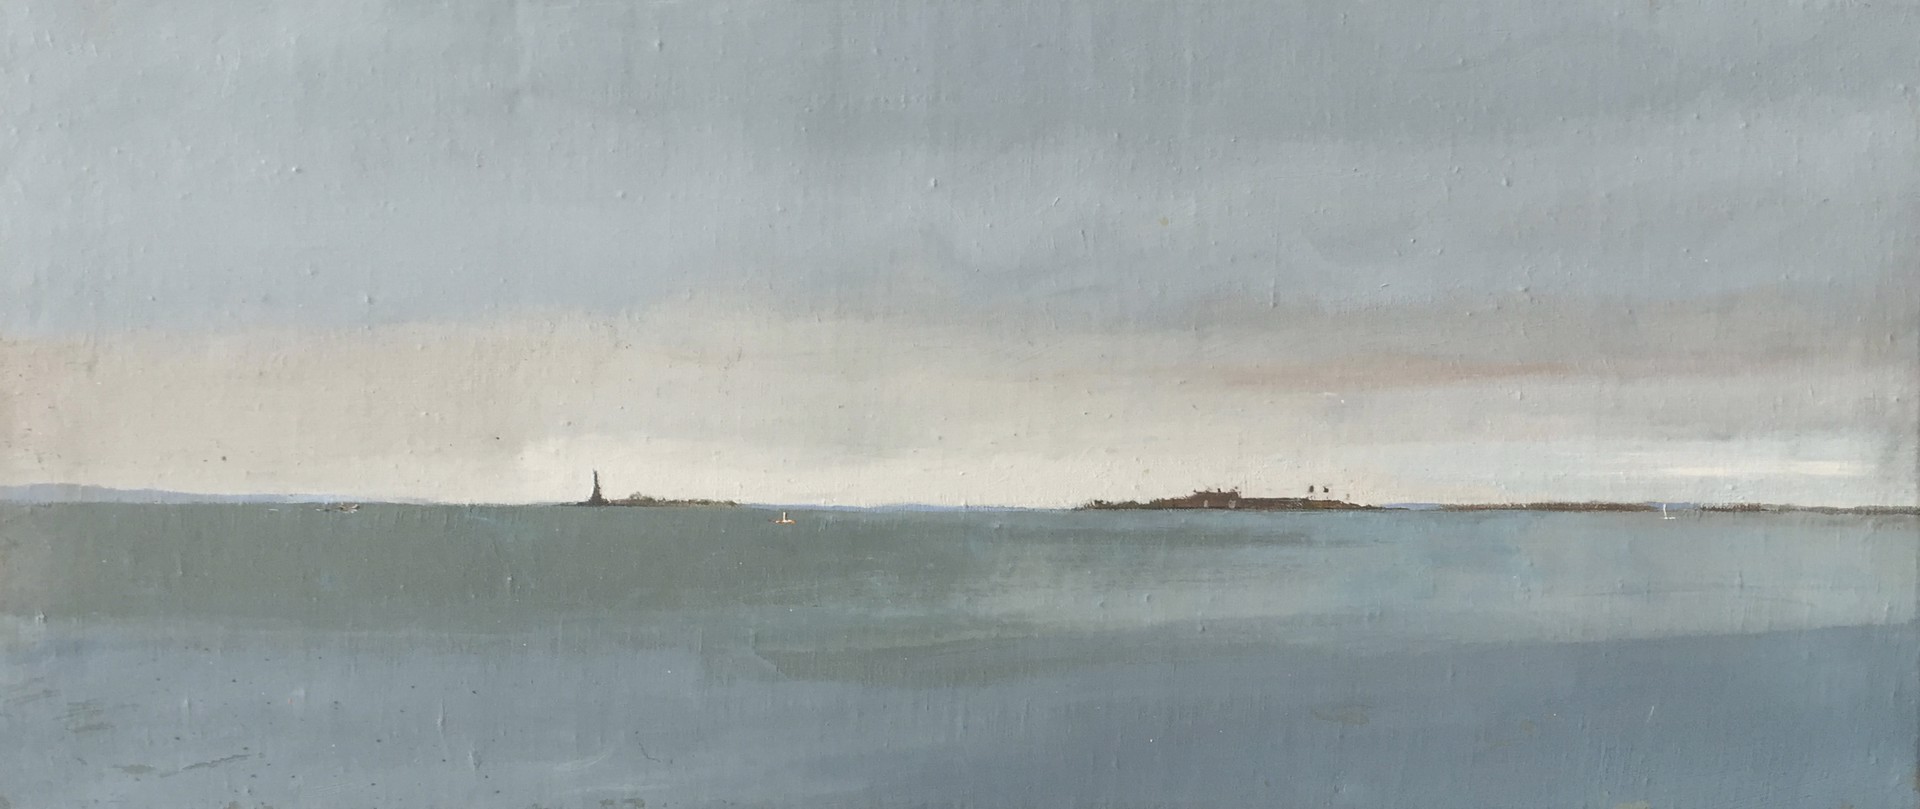 NY Harbor from Battery Park by Arthur Cohen